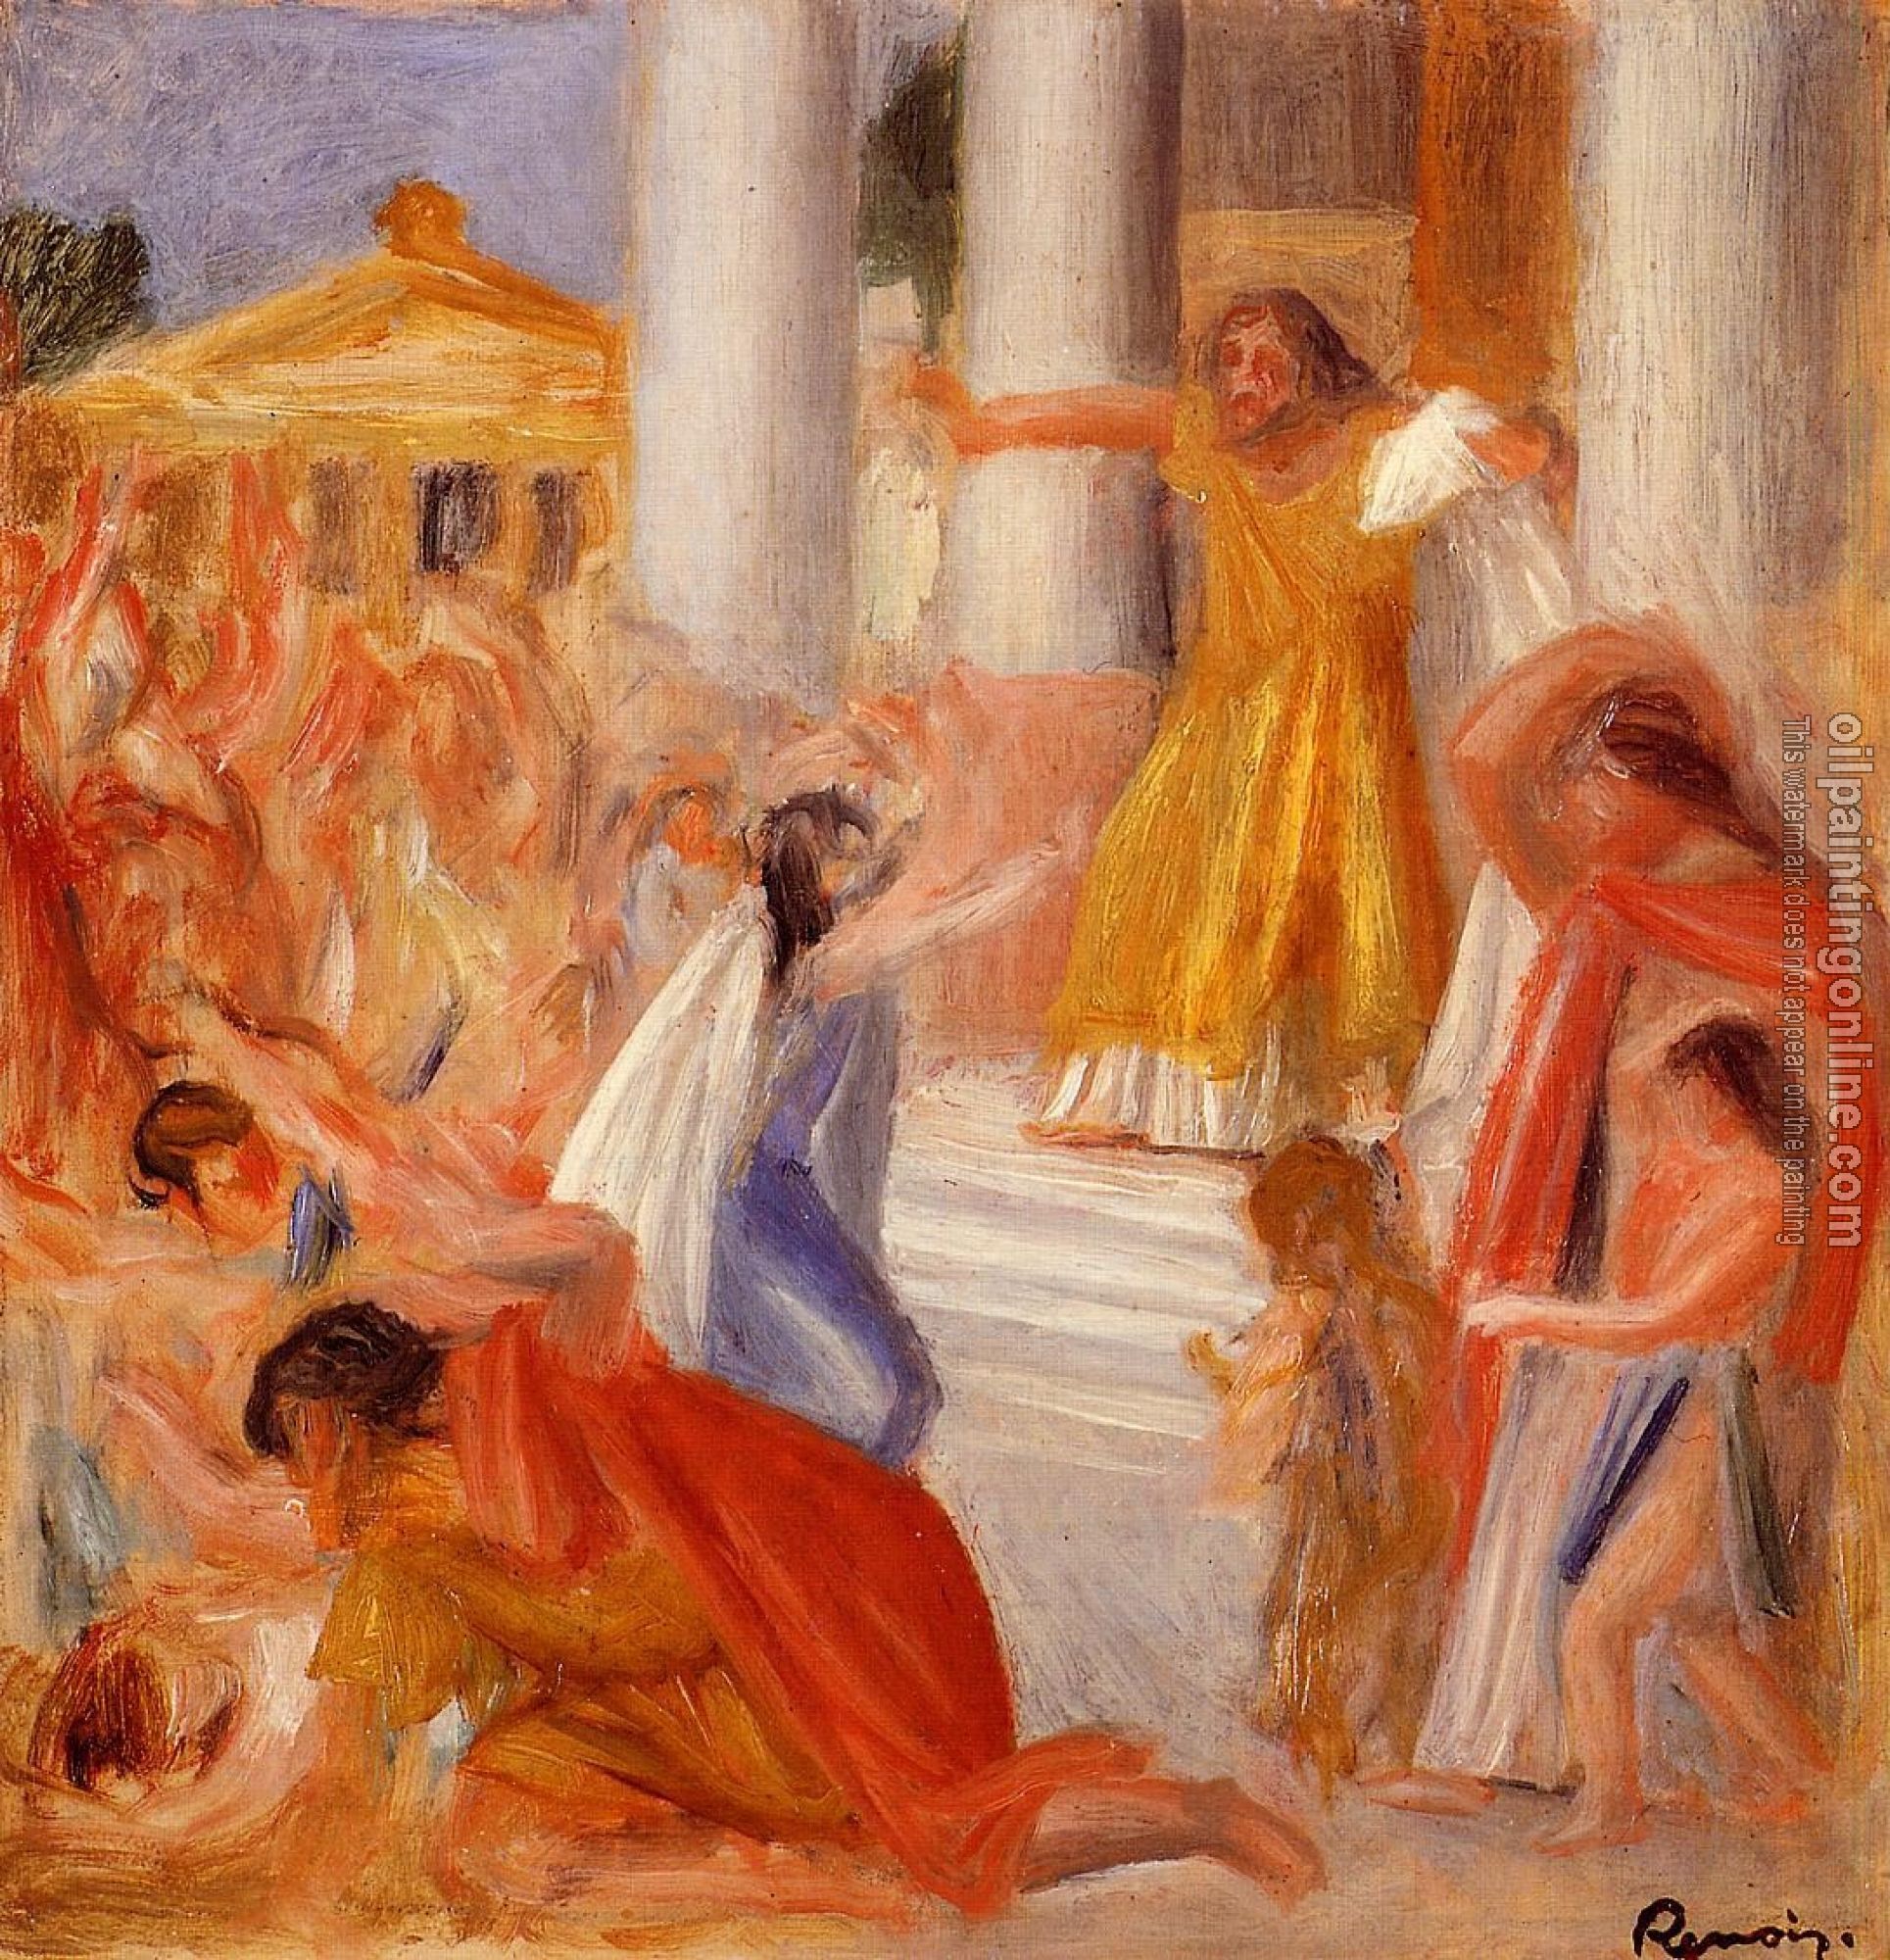 Renoir, Pierre Auguste - Oedipus Rex